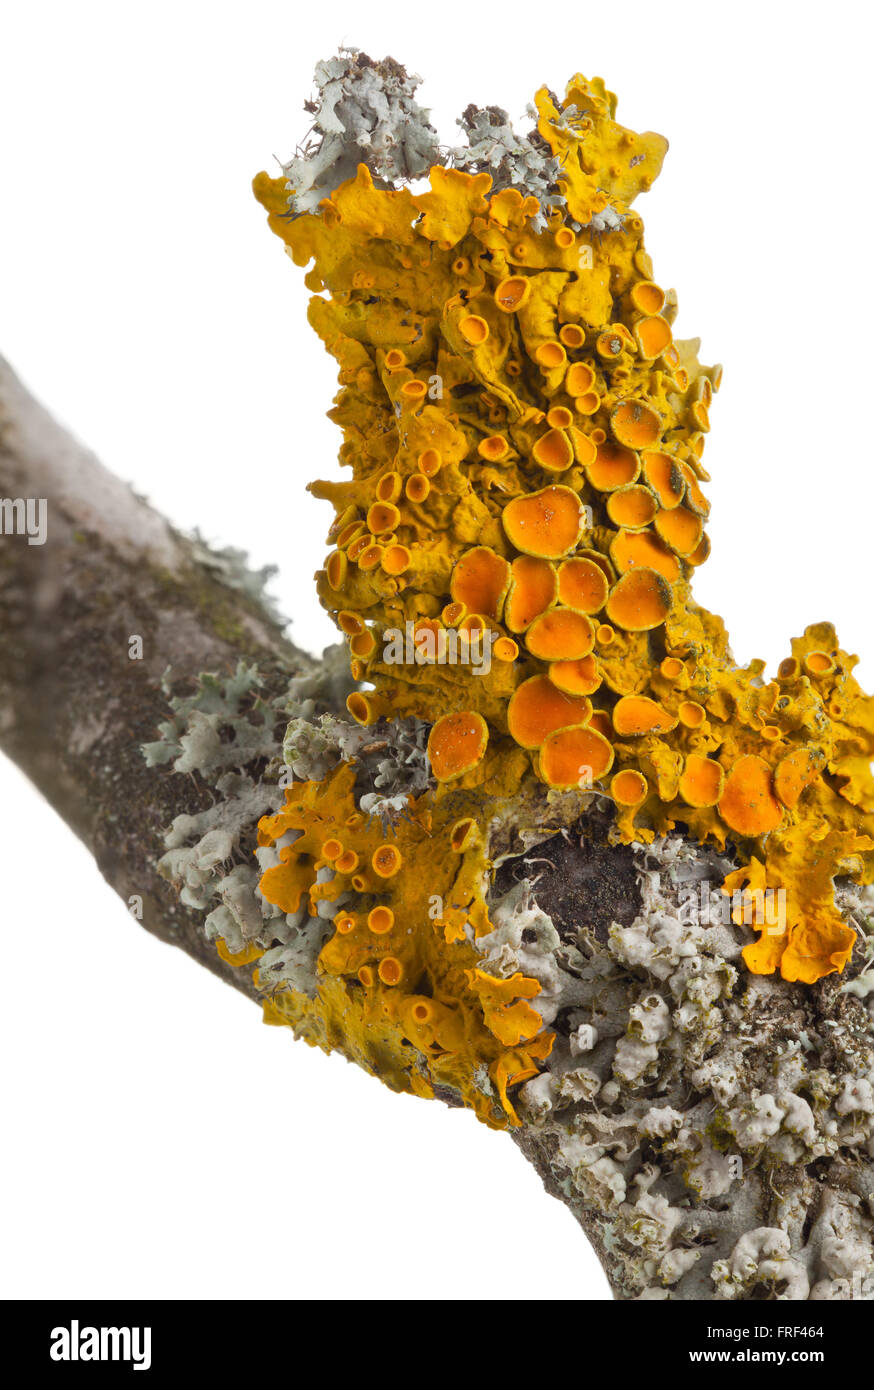 Common orange lichen (also yellow scale, maritime sunburst lichen or shore lichen) (Xanthoria parietina) on tree bark isolated on white Stock Photo